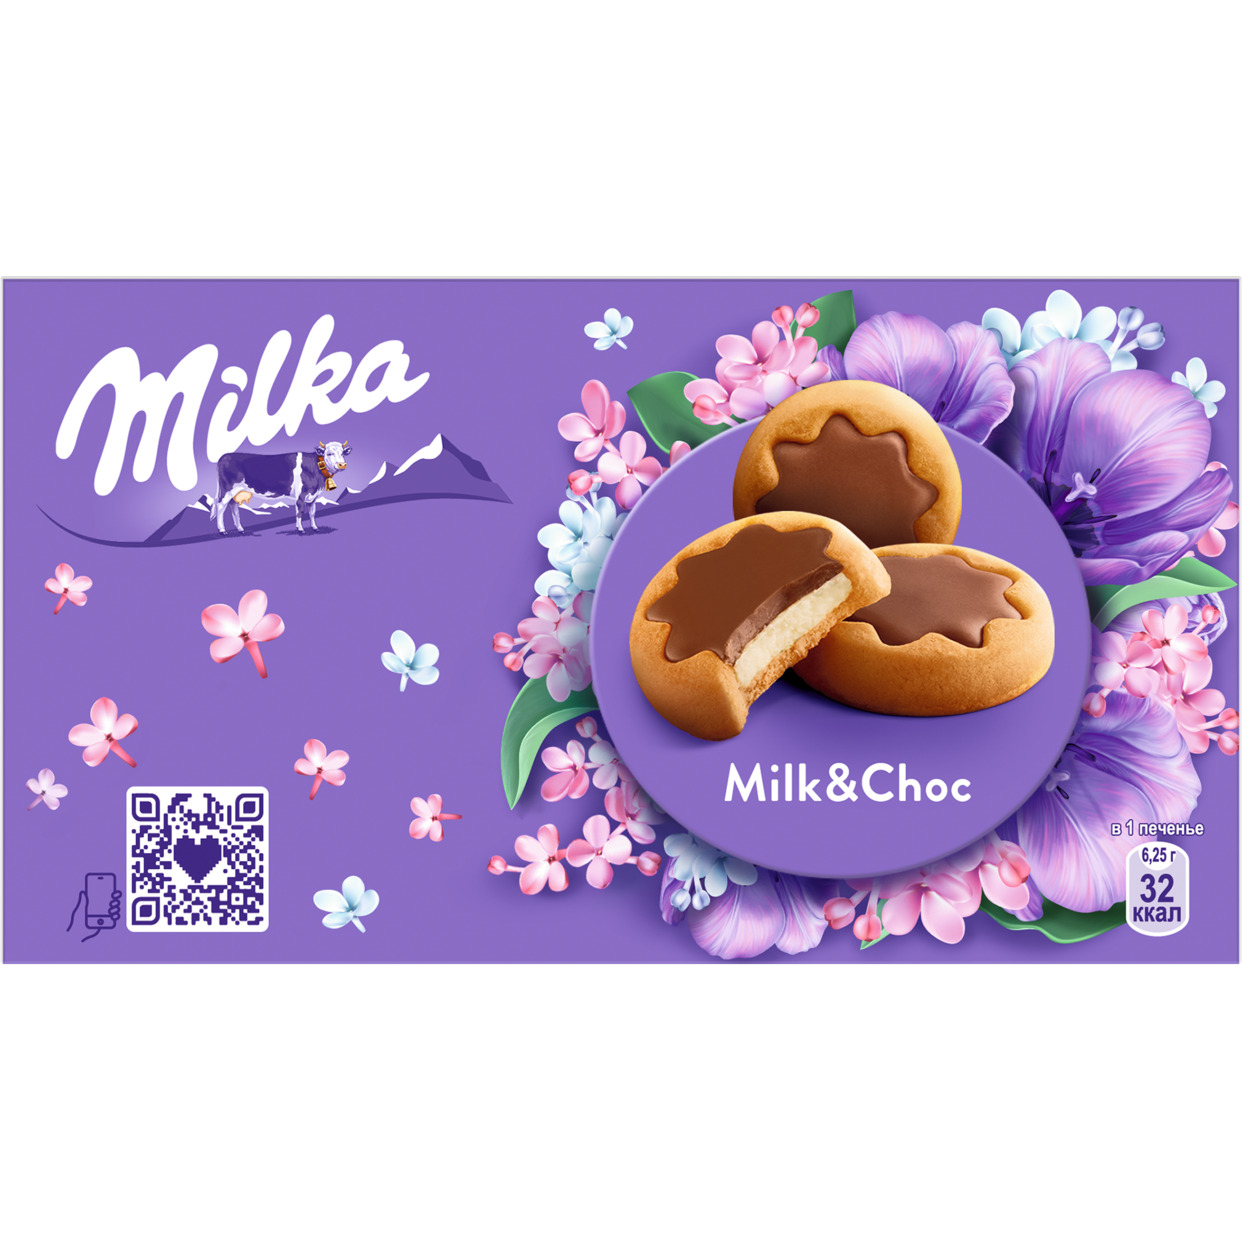 Печенье Milka с молочной начинкой в шоколаде 150г по акции в Пятерочке